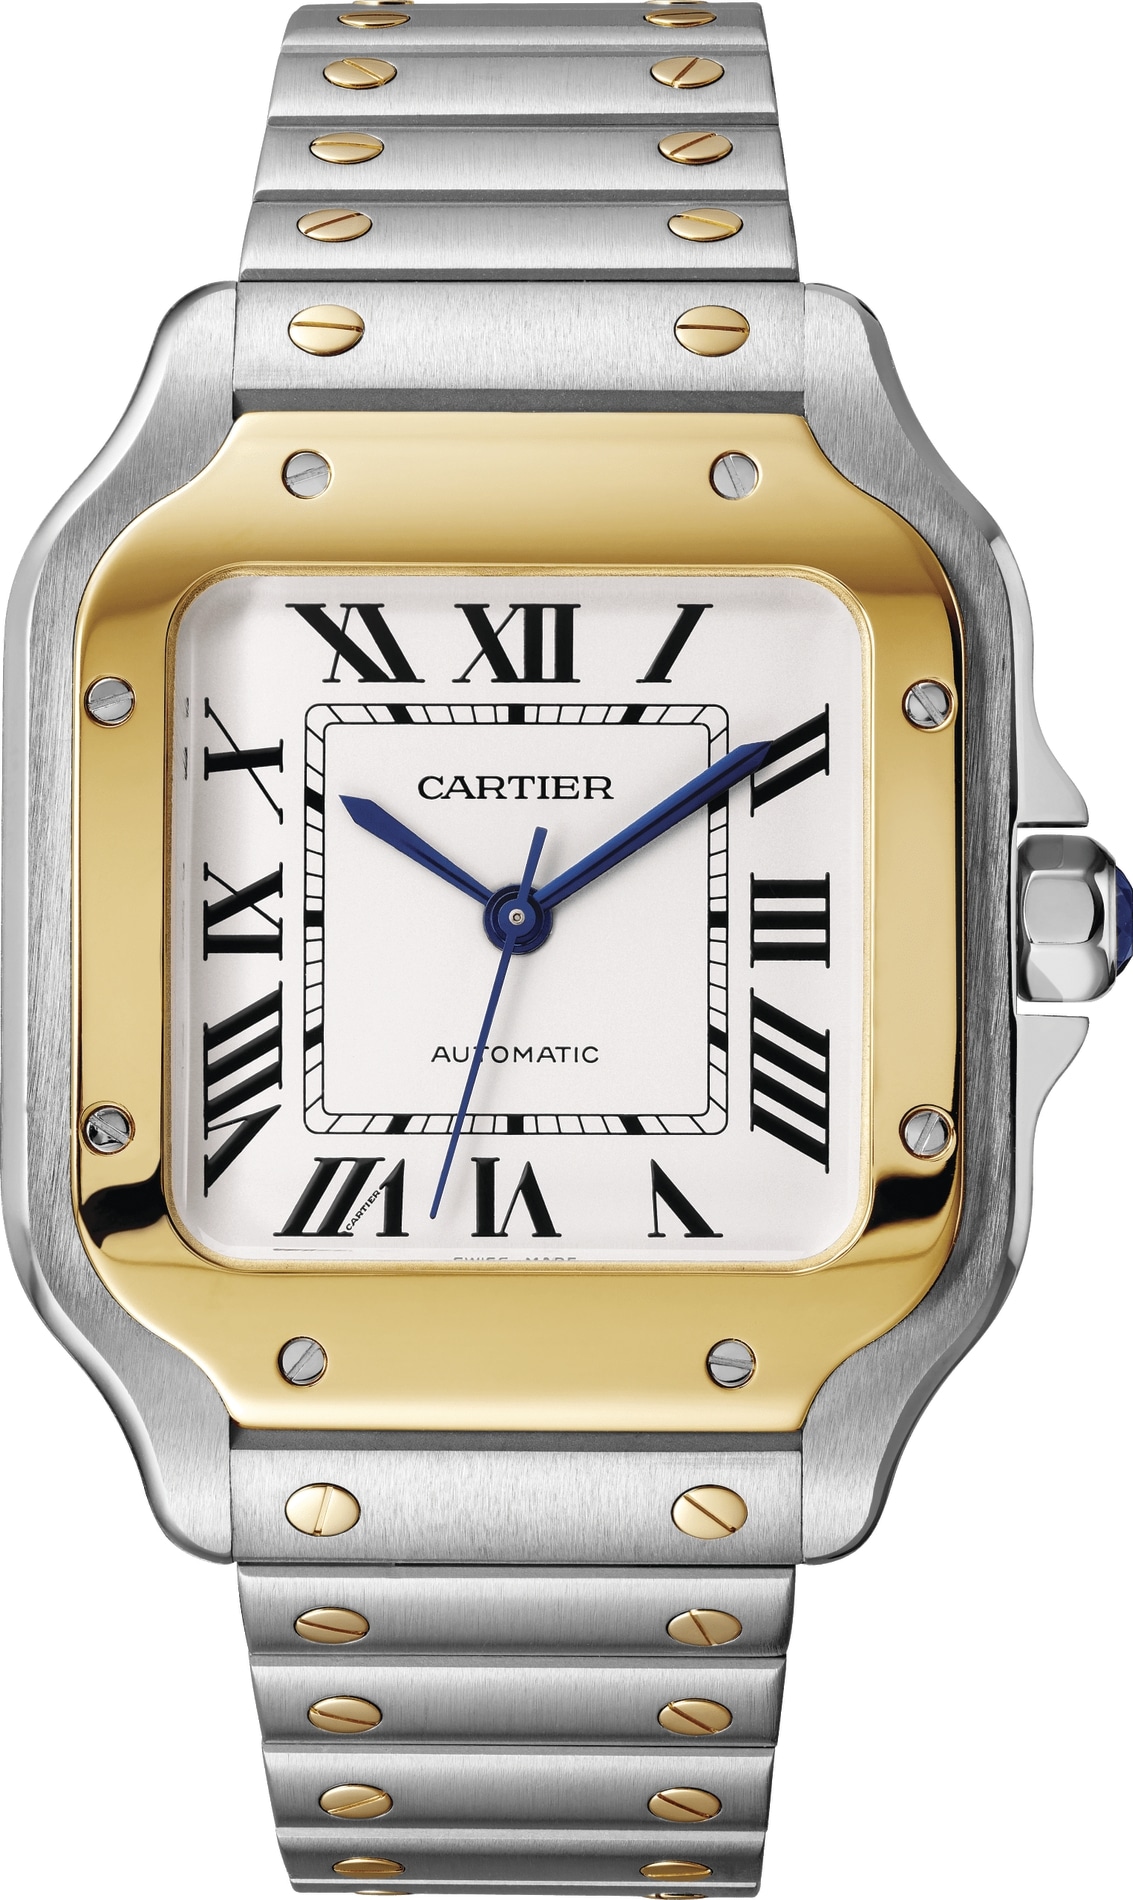 Cartier_watch.jpg